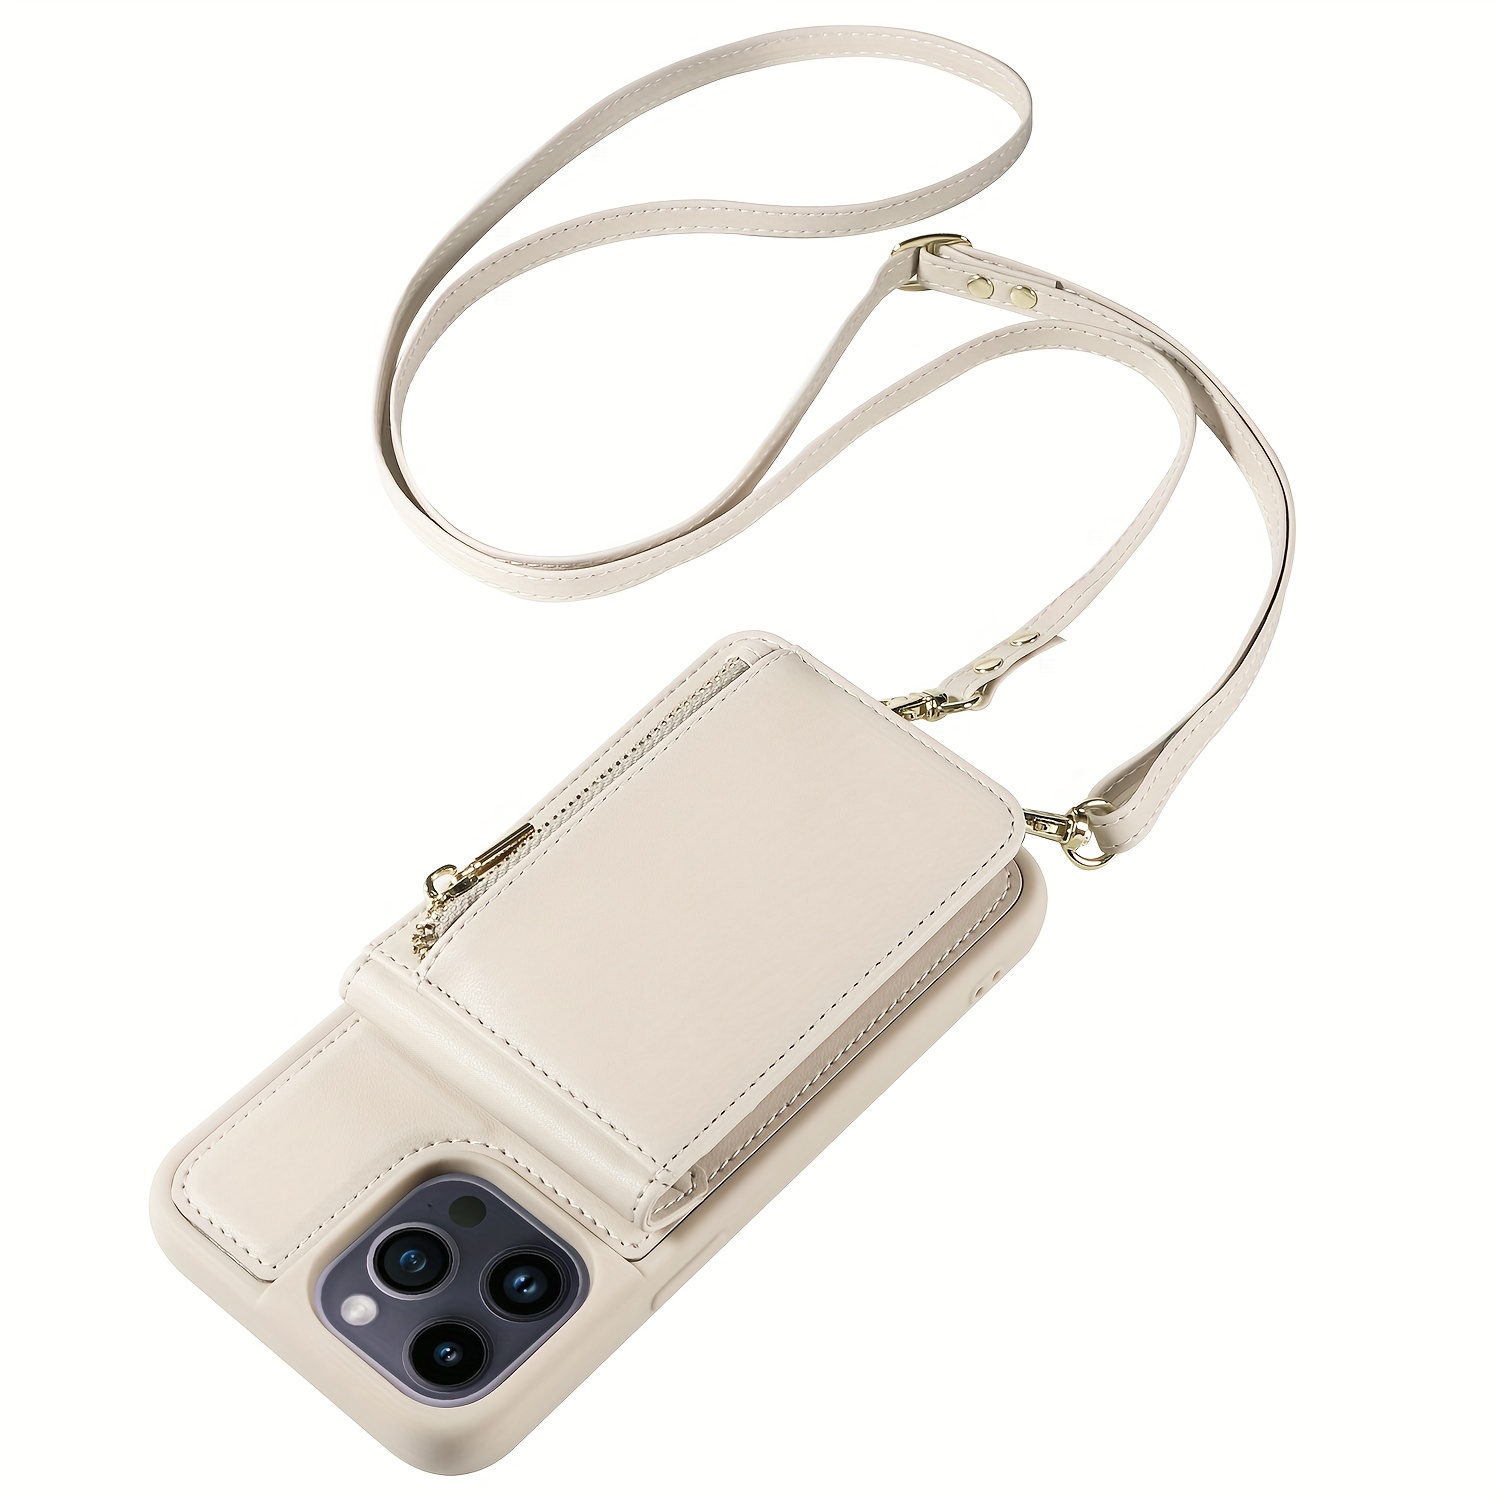 Increíble cinturón de correr para iPhone 6 Plus para correr, guarda  tarjetas de crédito, efectivo, maquillaje, identificación, cintura para  correr y